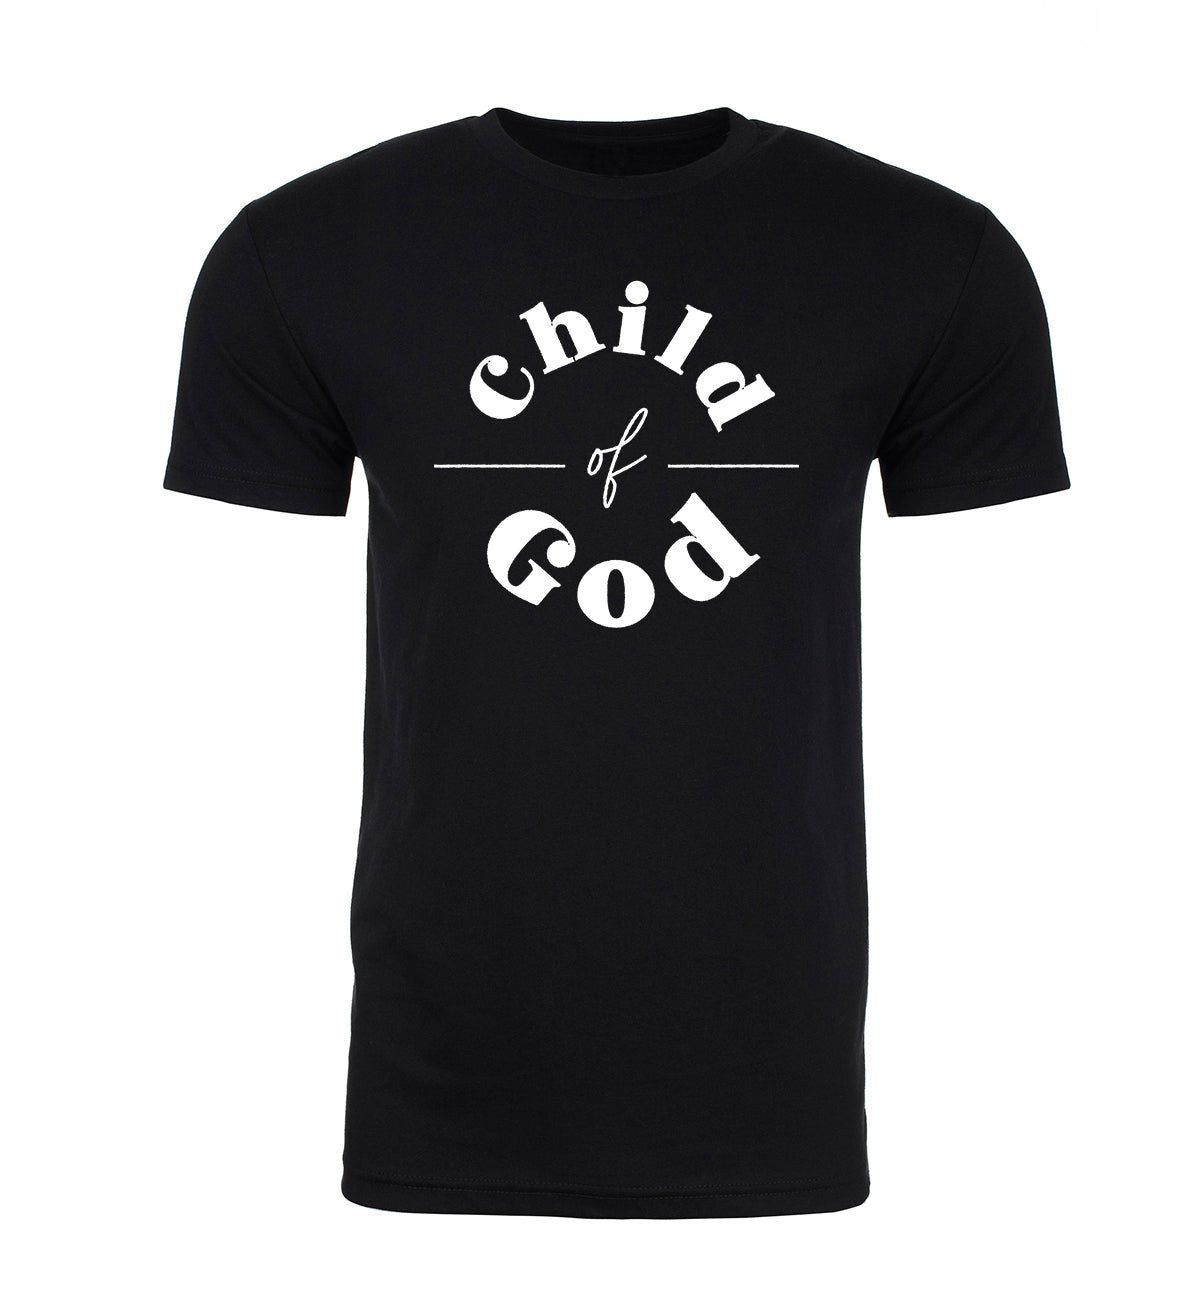 Child of God Unisex Christian T Shirts - Mato & Hash